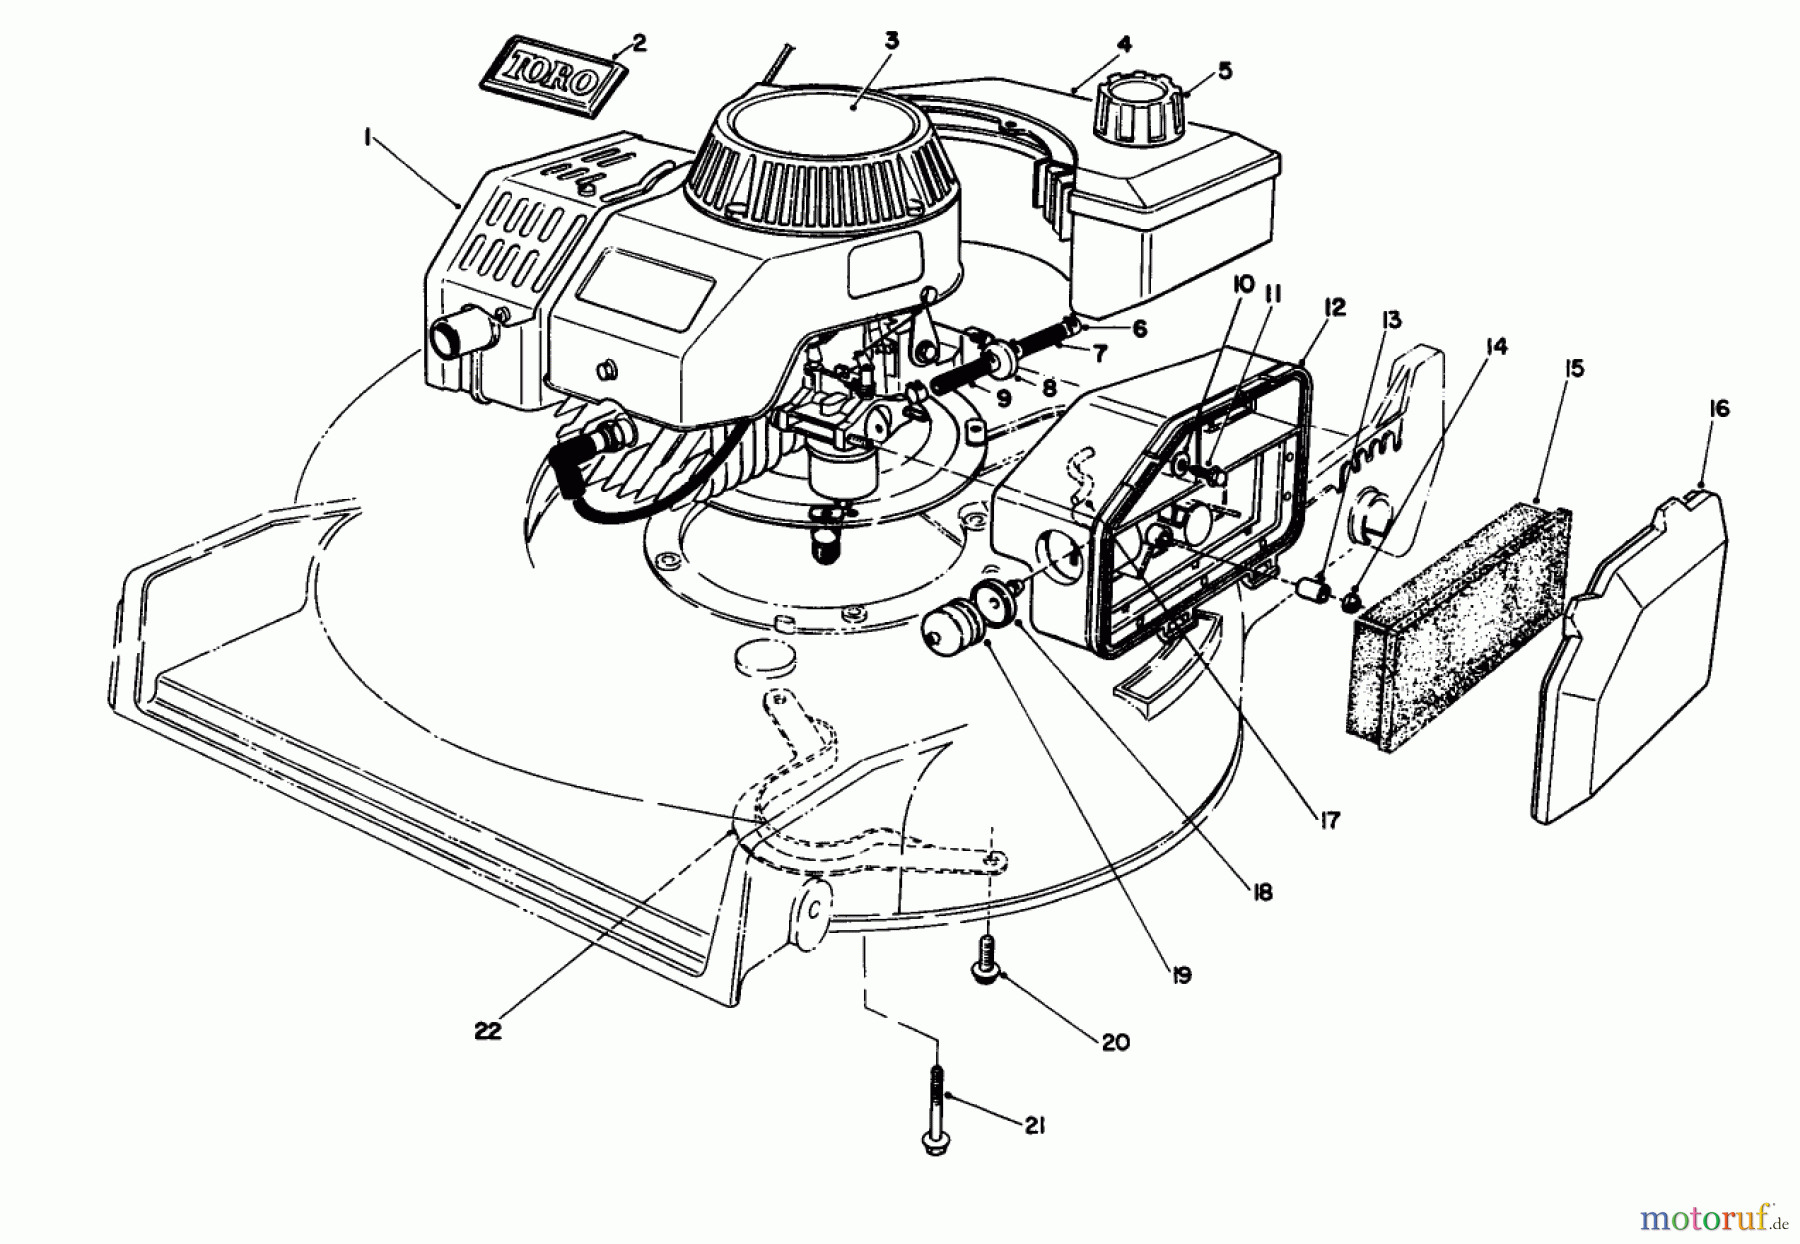  Toro Neu Mowers, Walk-Behind Seite 1 20684C - Toro Lawnmower, 1989 (9000001-9999999) ENGINE ASSEMBLY